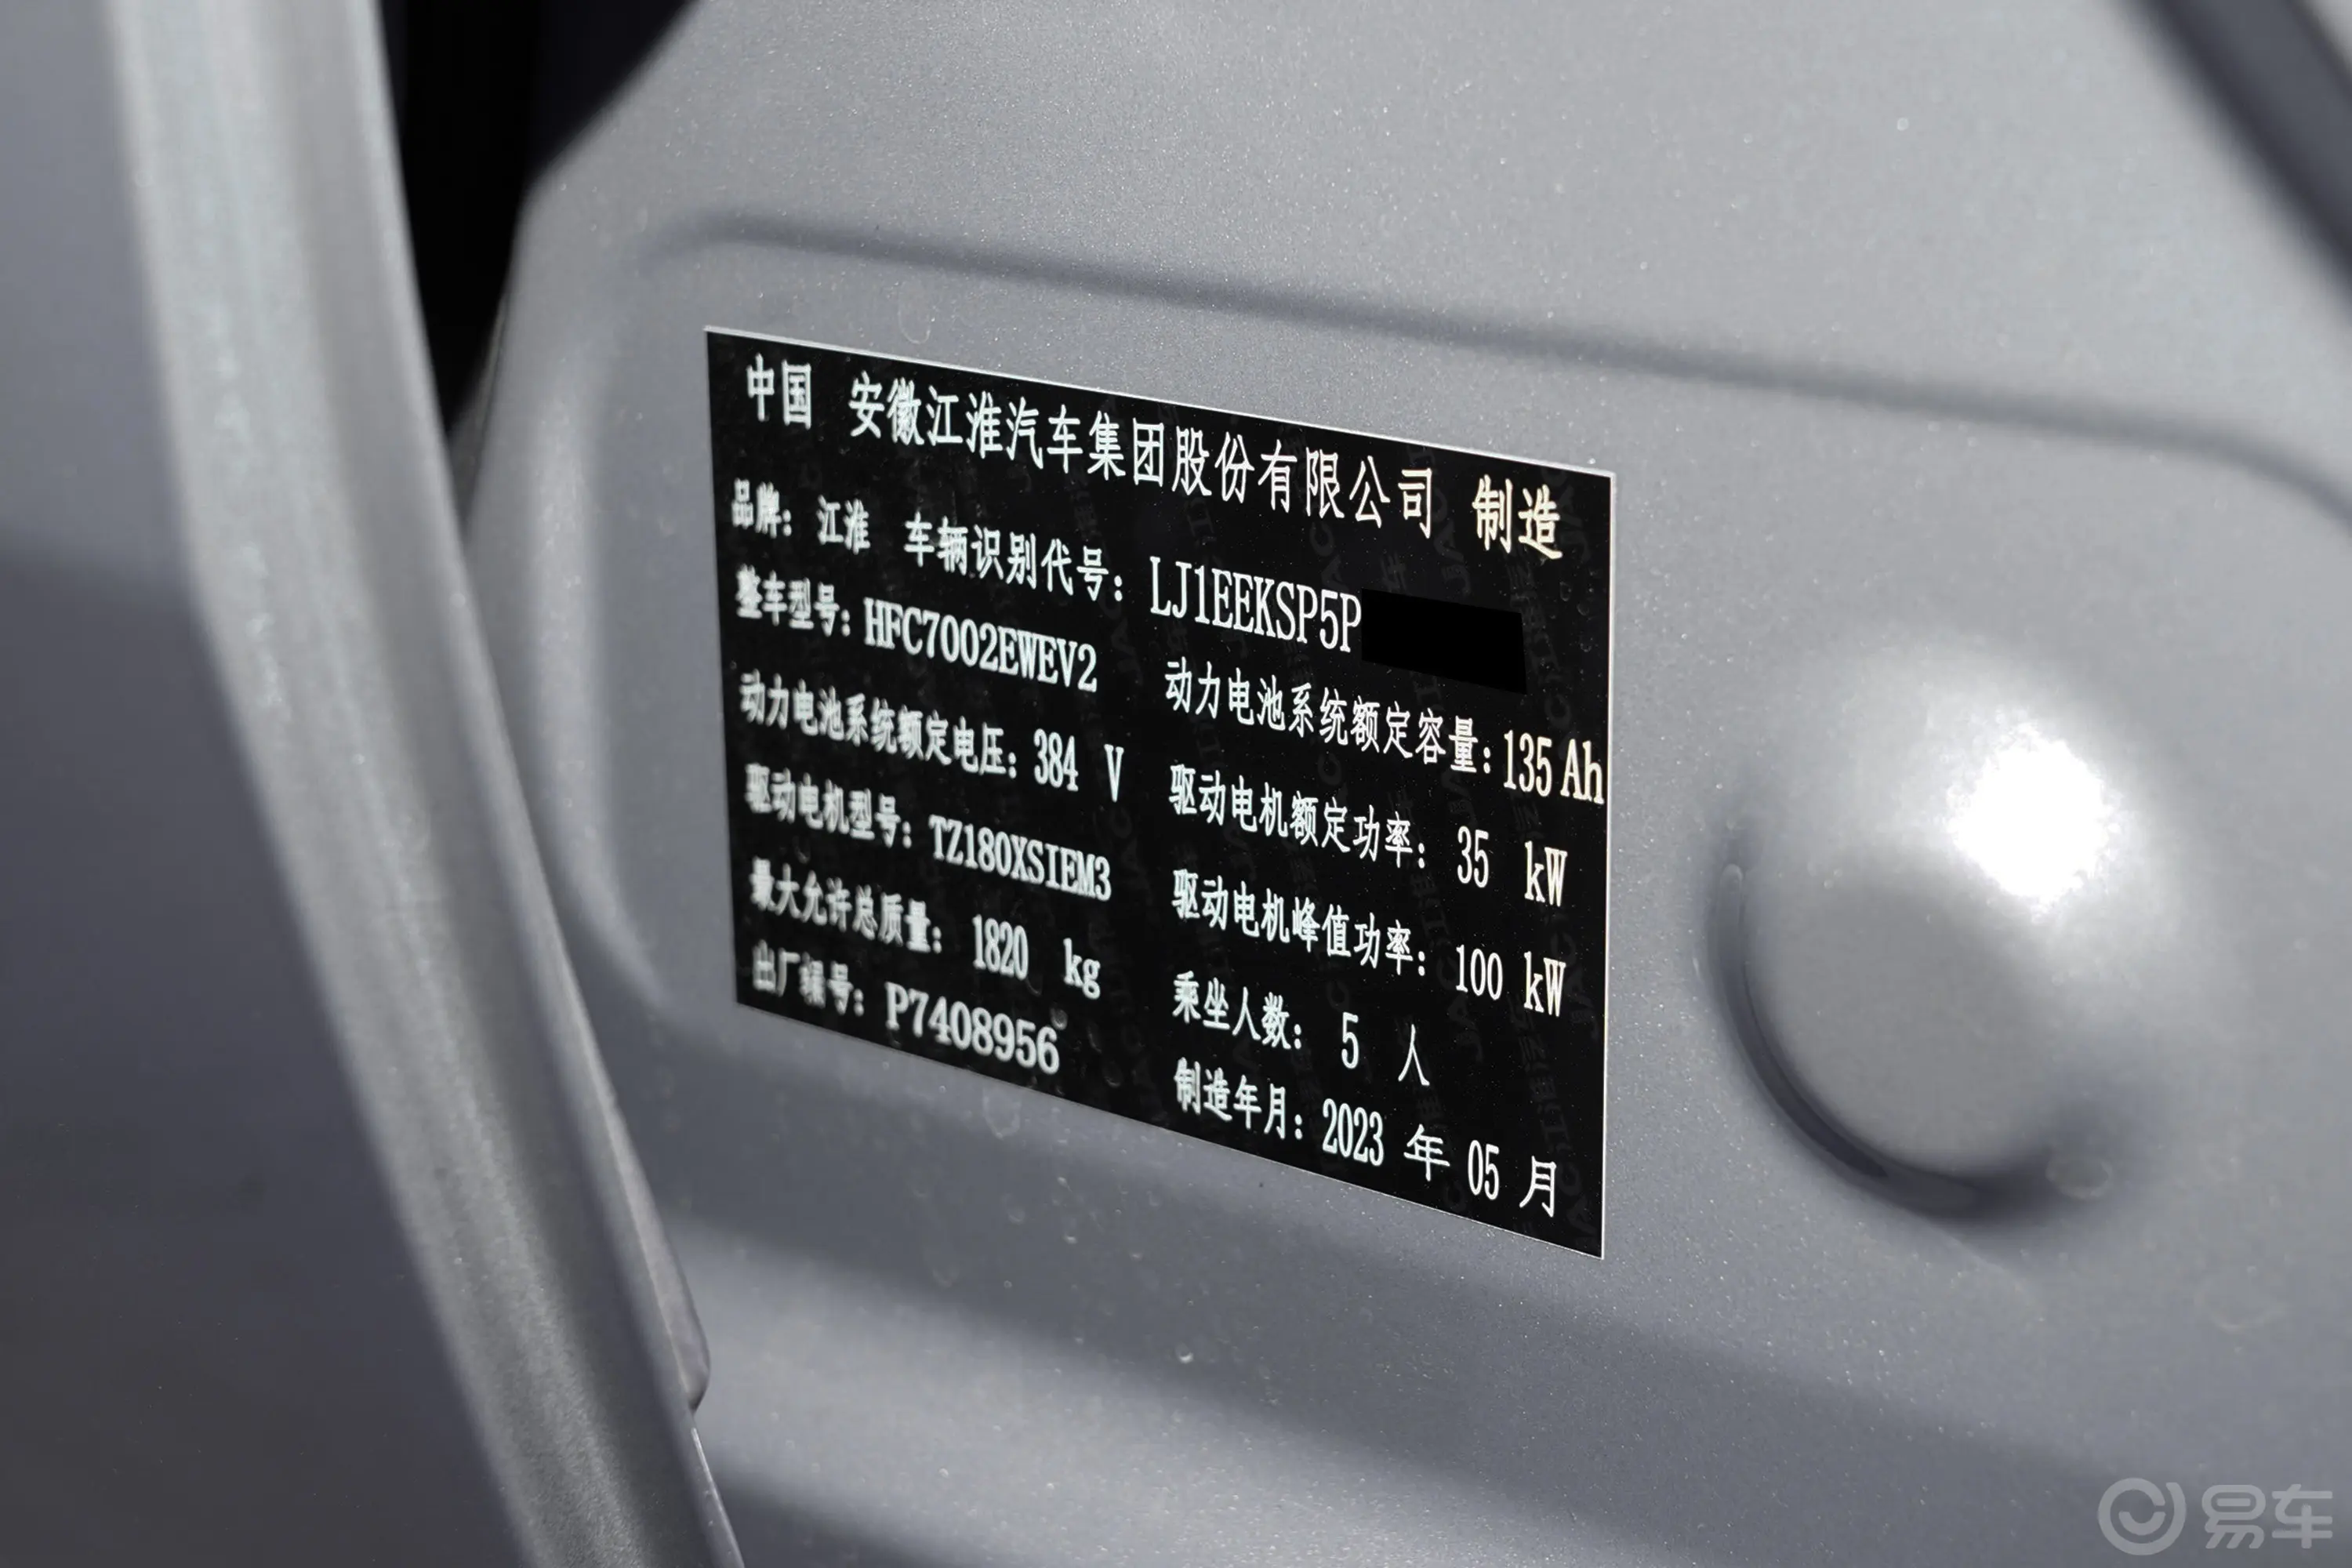 江淮钇为3505km Pro+车辆信息铭牌